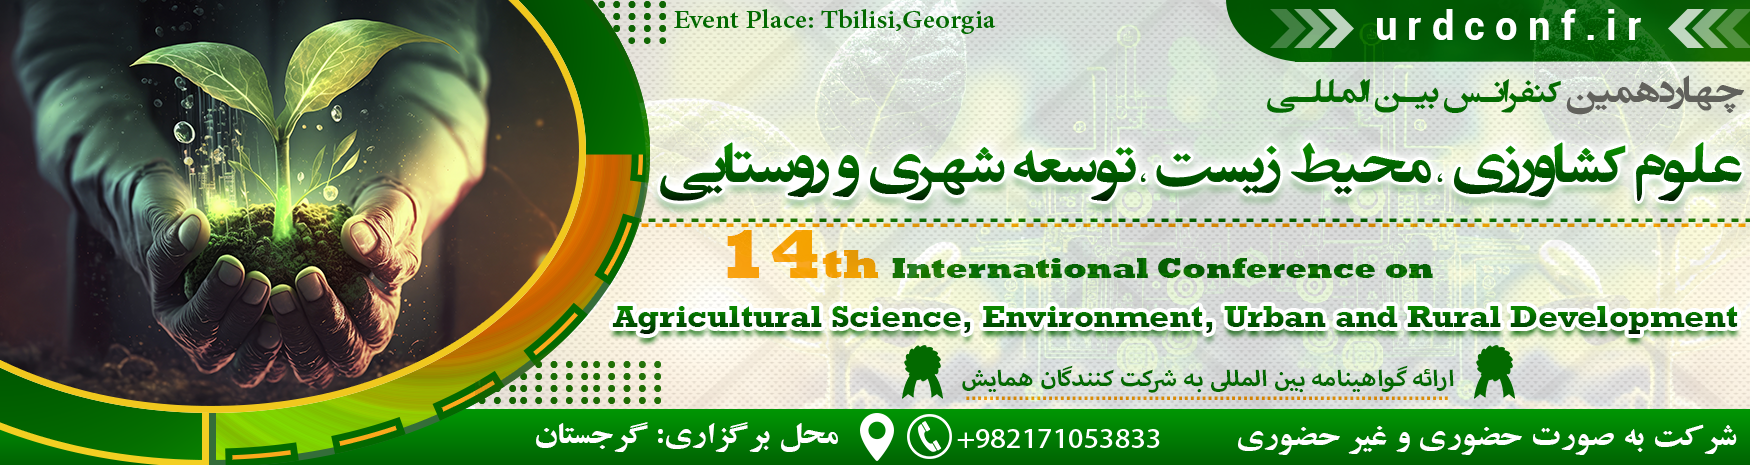 کنفرانس بین المللی کشاورزی،محیط زیست،توسعه شهری و روستایی